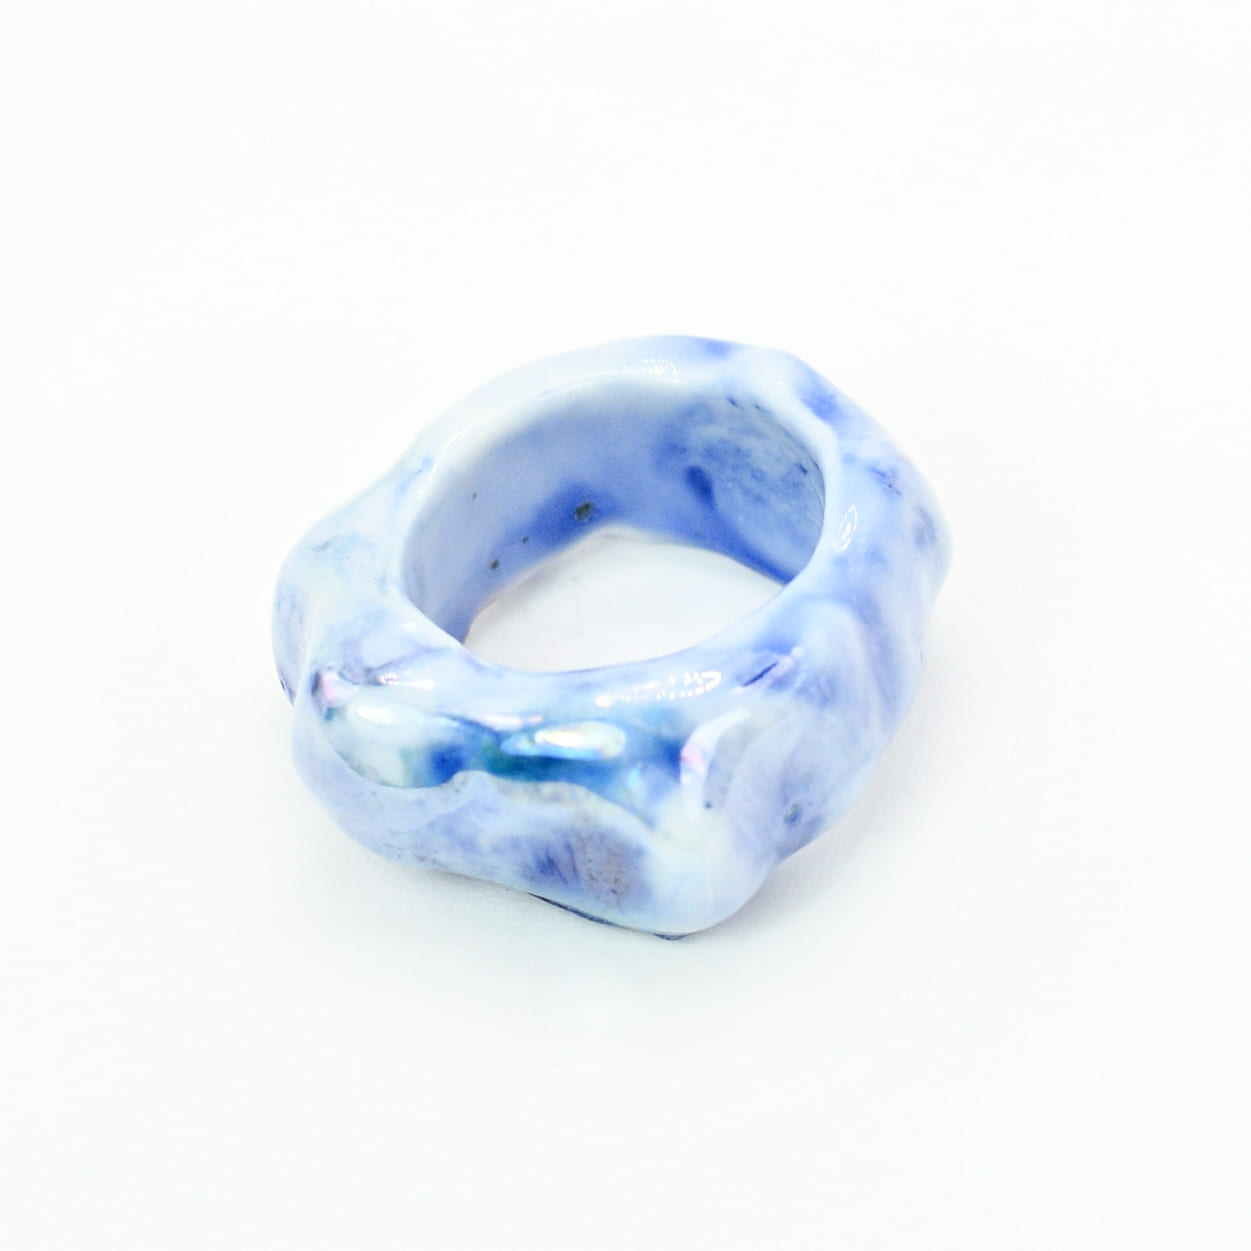 FABIOLA Porcelain Ceramic Ring